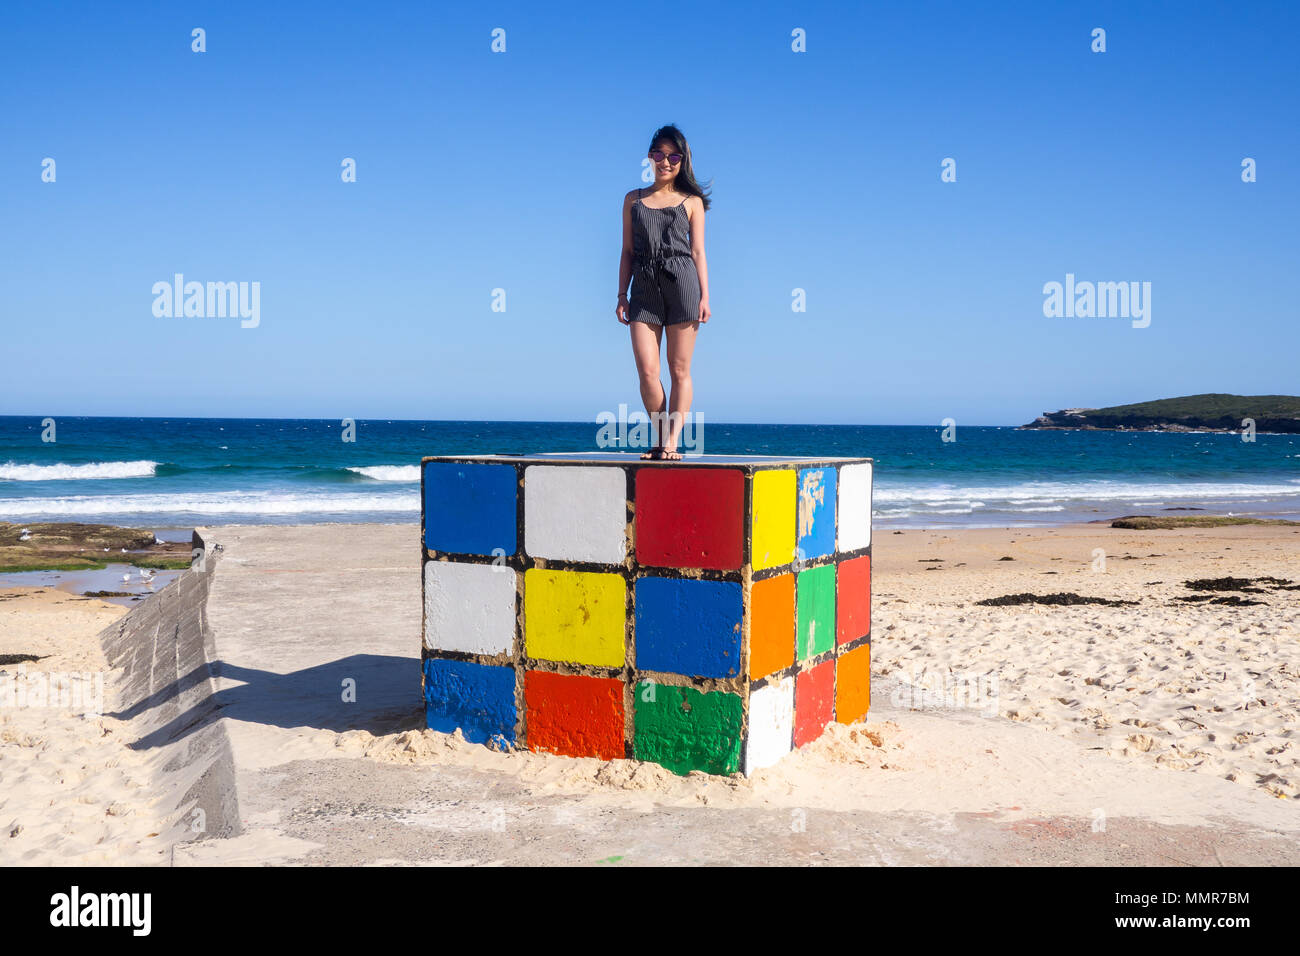 Jeune femme se dresse sur Rubik cube géant à Maroubra Beach, Sydney, Australie Banque D'Images